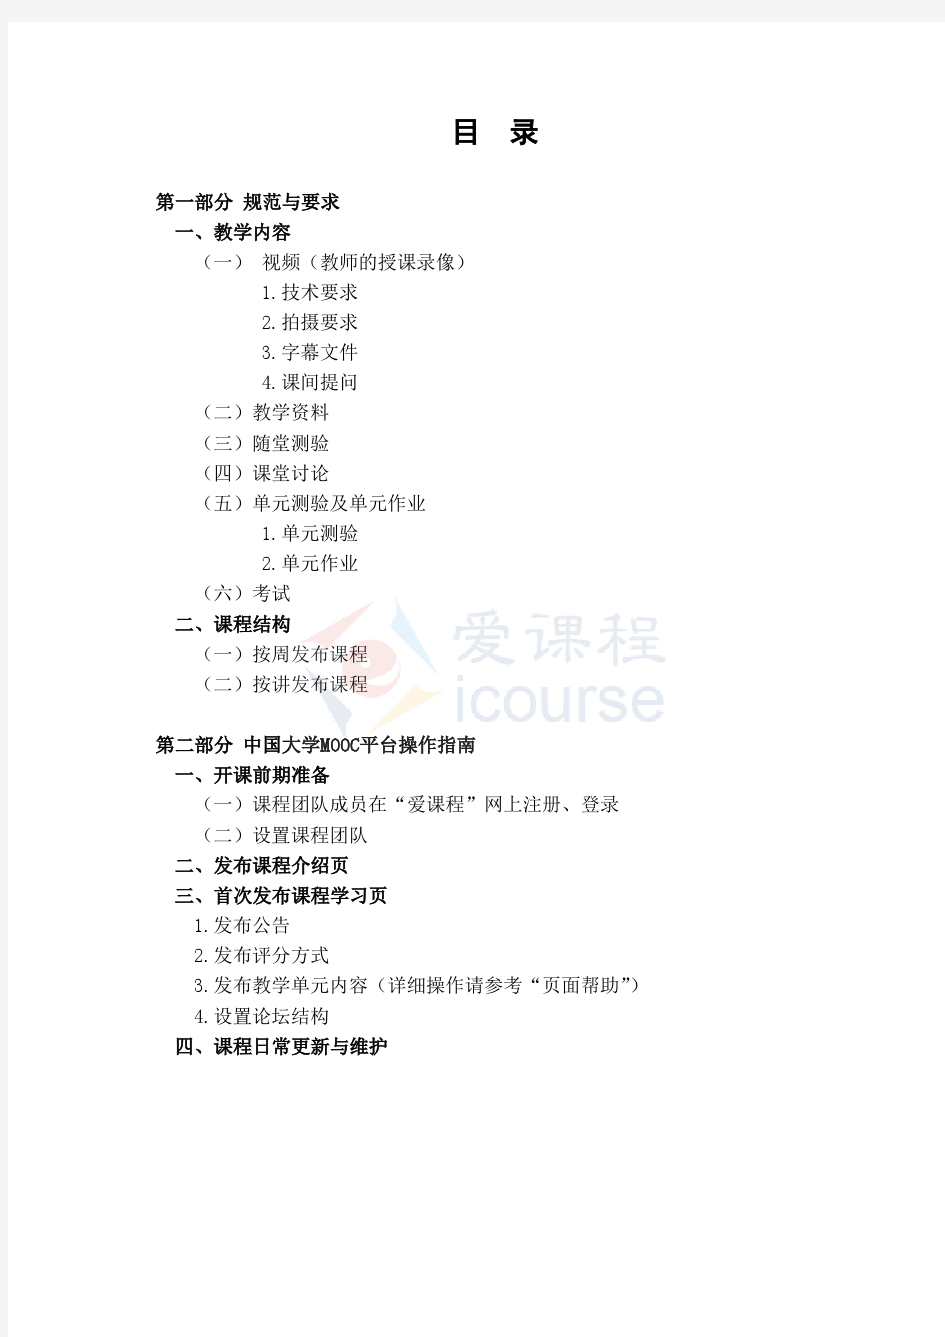 中国大学MOOC建设指南(2014) (1)